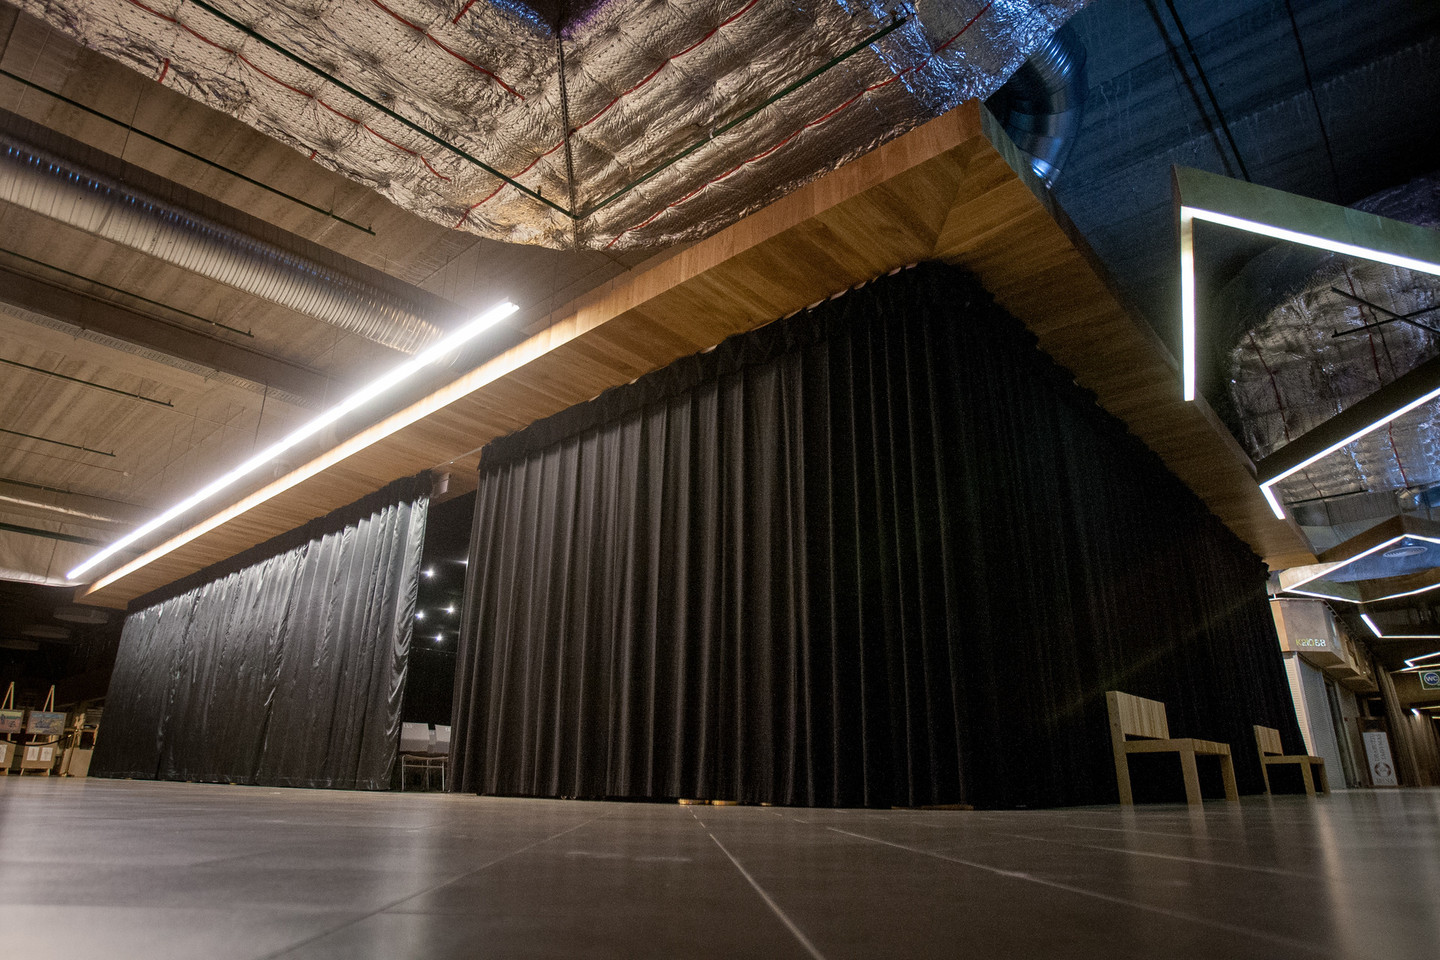 Mobili koncertų salė Gariūnuose atitinka reikiamus akustikos reikalavimus, tačiau čia telpa tik kiek daugiau nei 200 žiūrovų.<br>D.Umbraso nuotr.